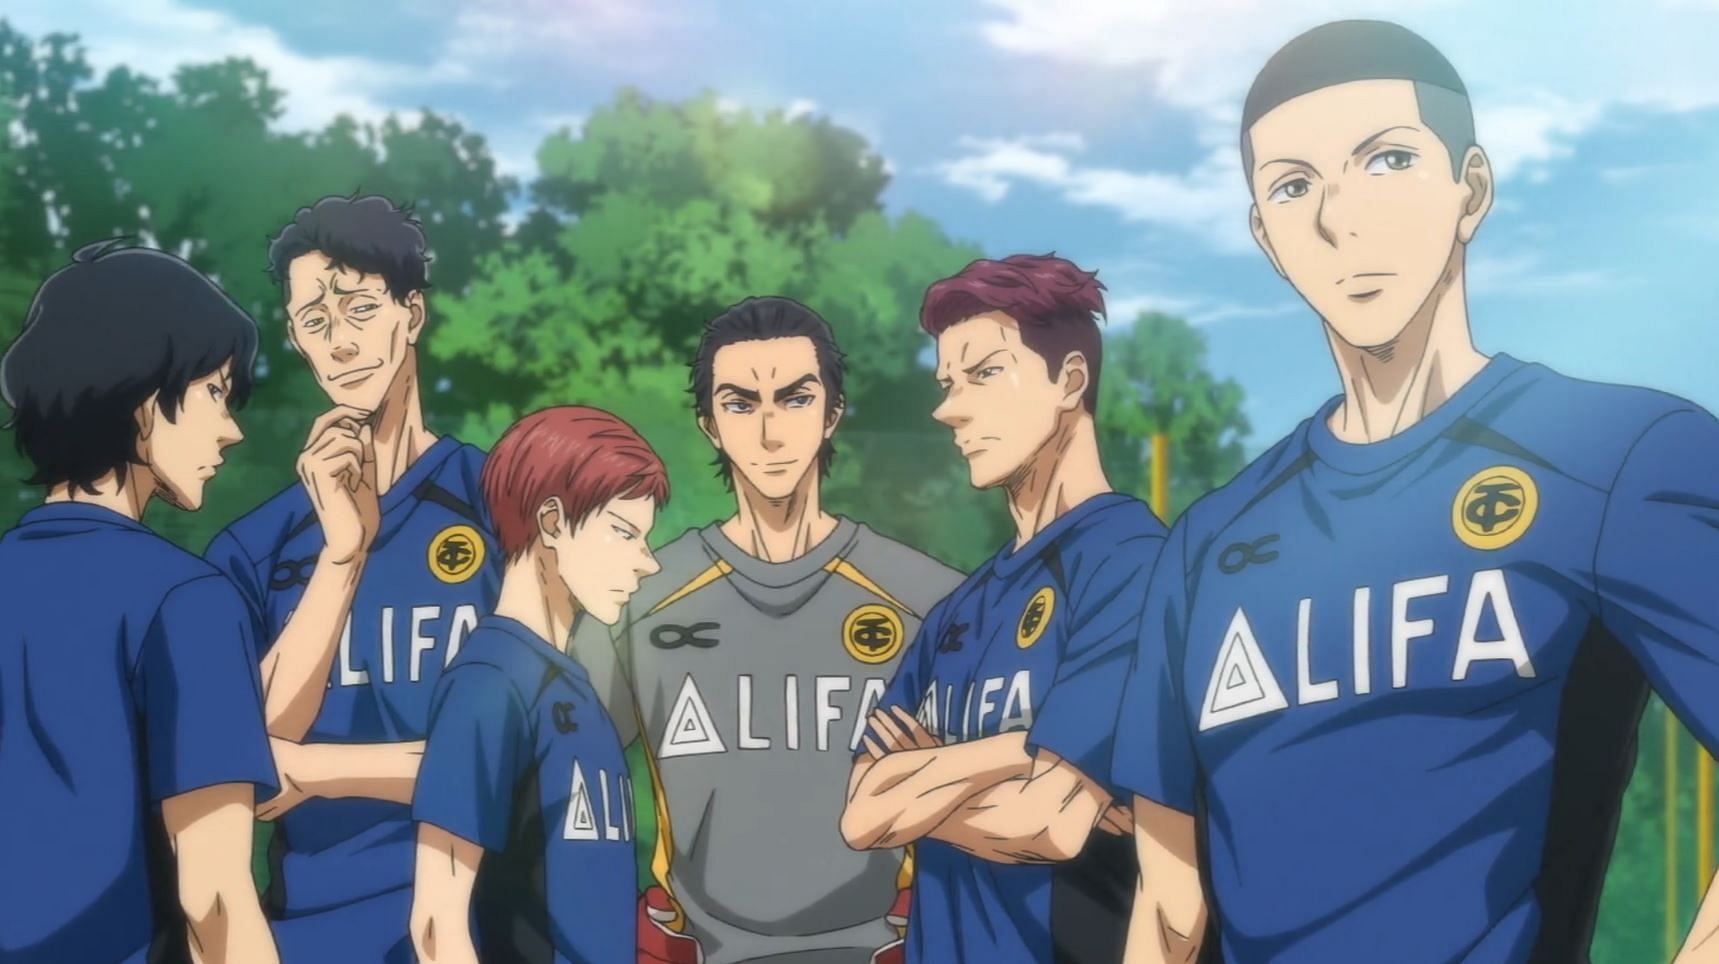 In Ao Ashi, Ashito reaches the big leagues